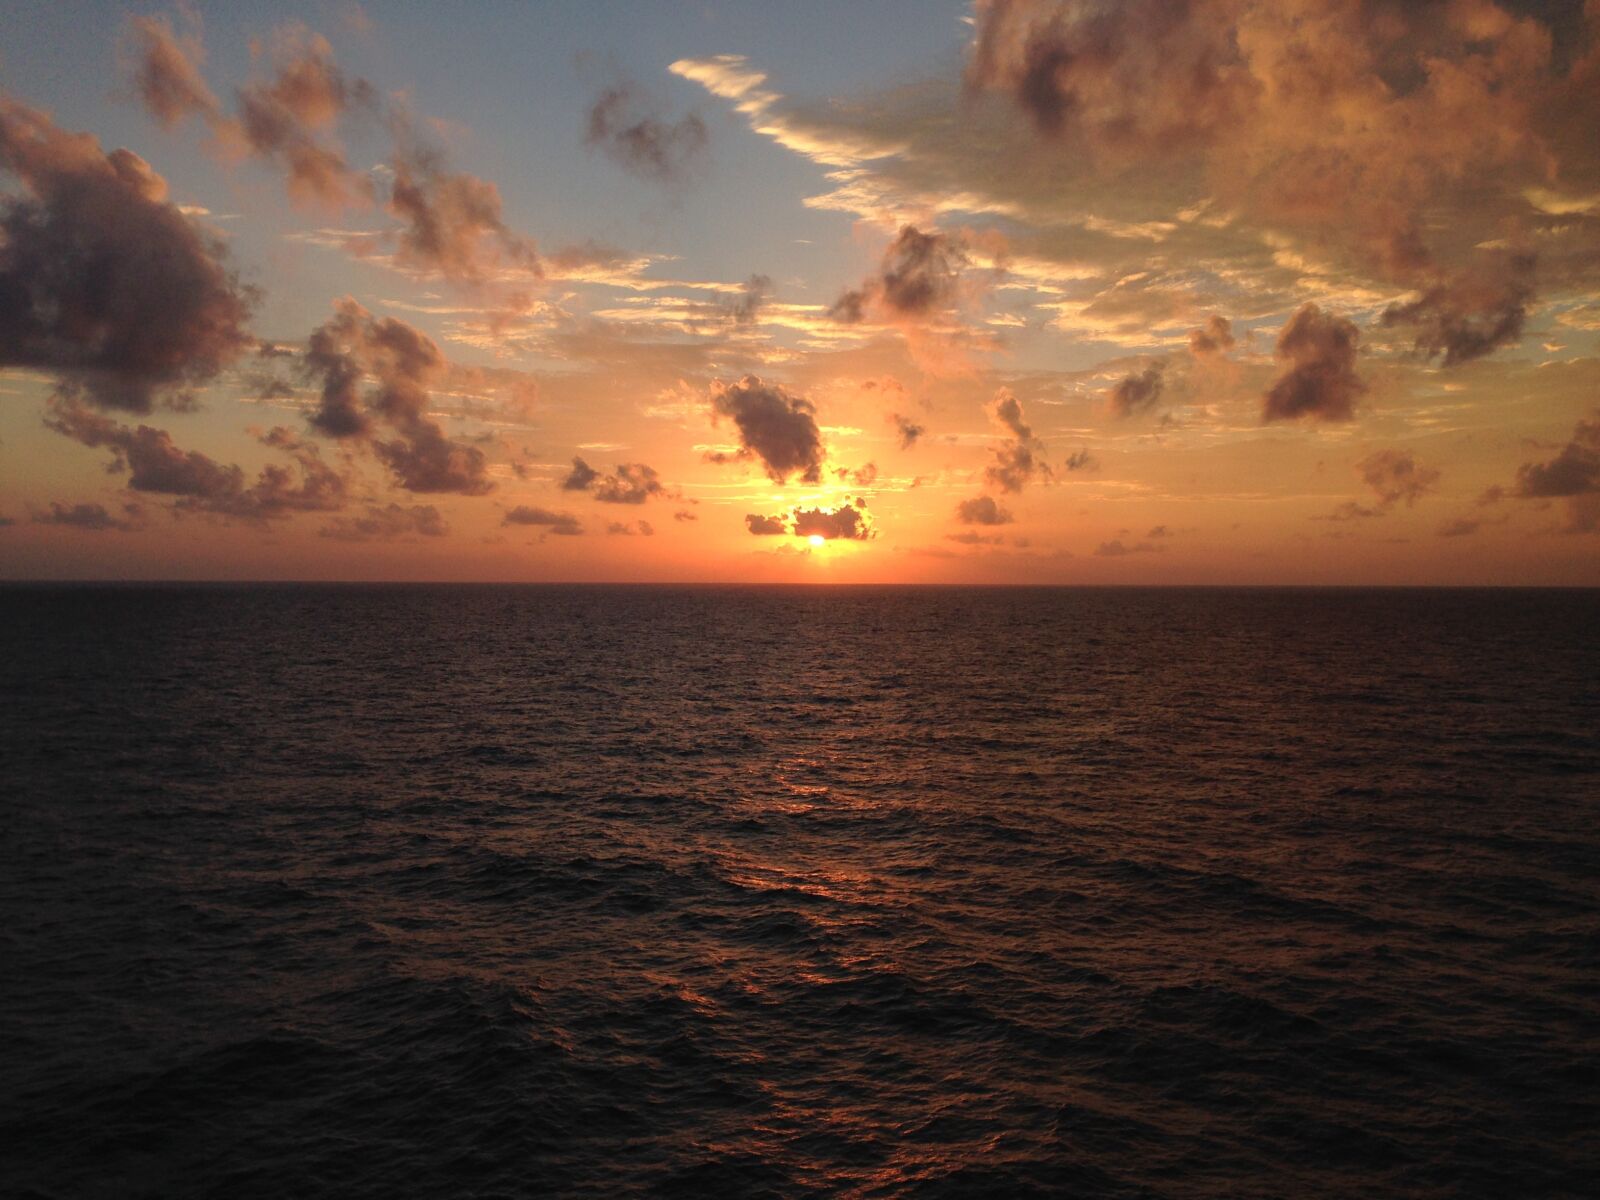 Apple iPhone 5 sample photo. Sunset, landscape, cruise photography